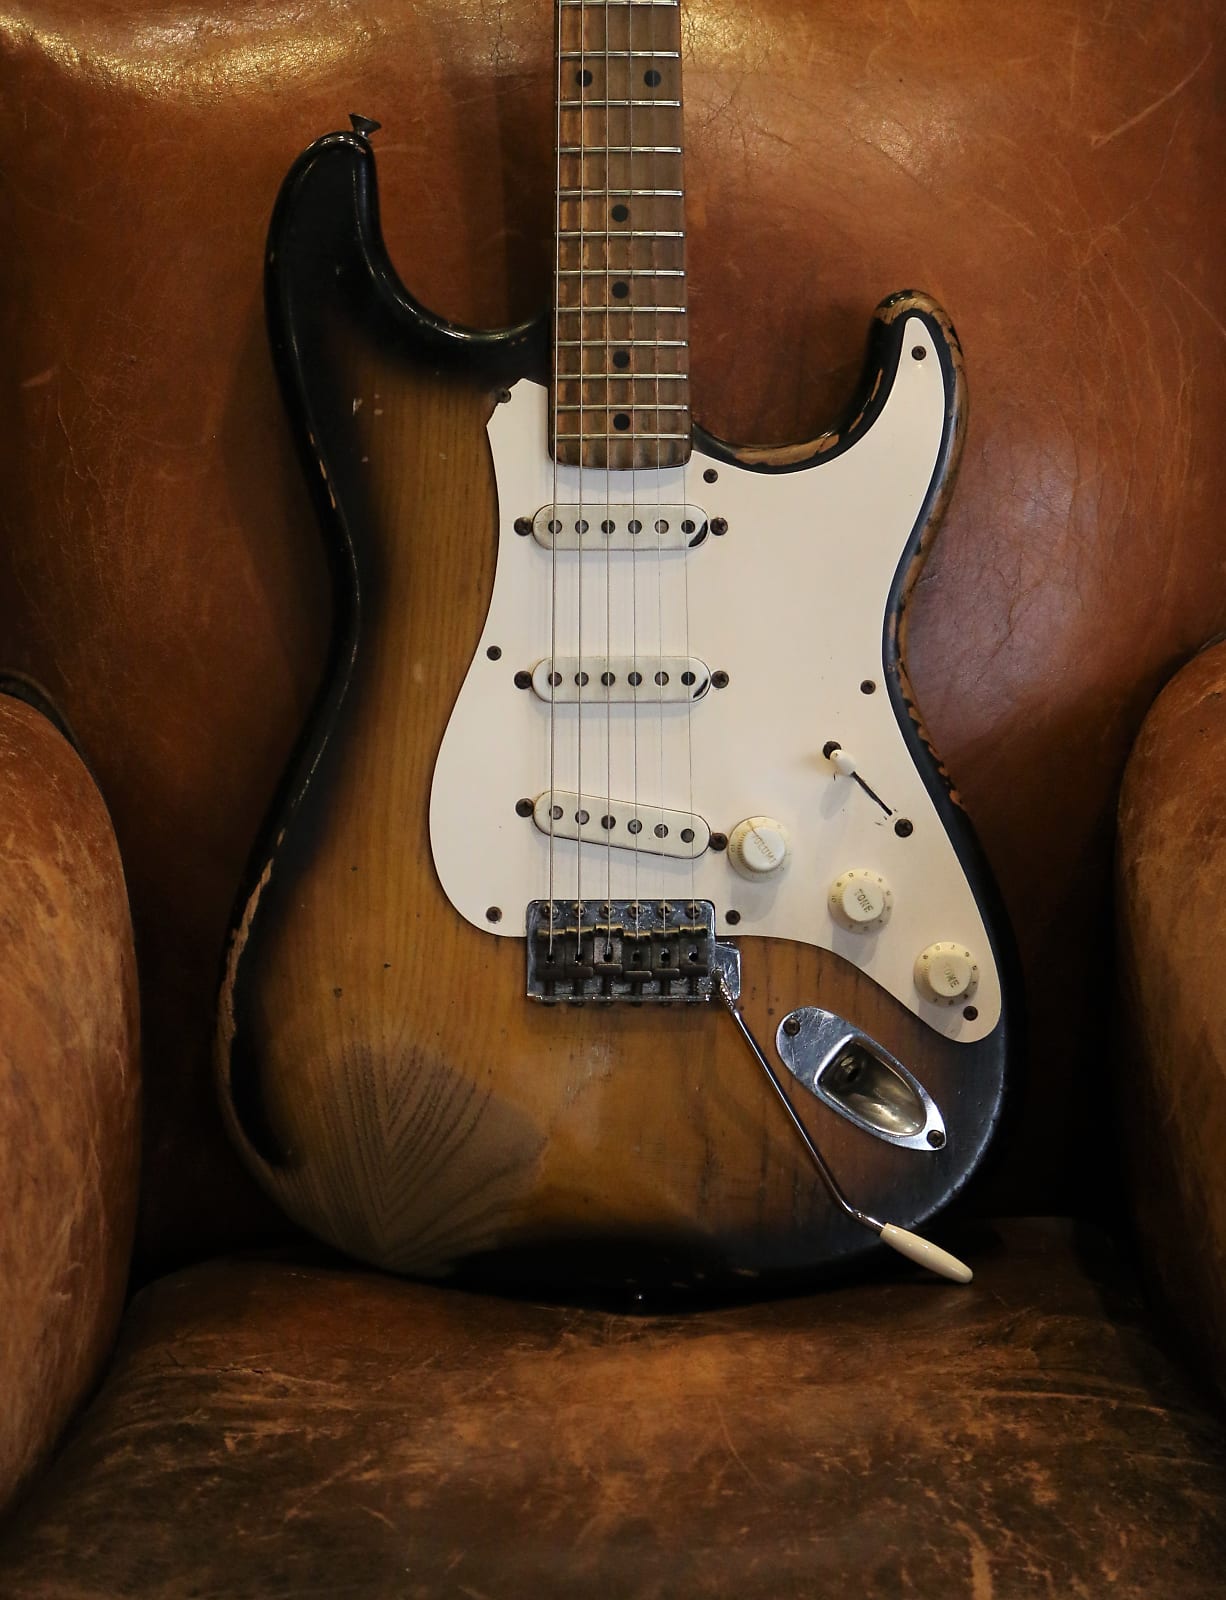 2. 1954 Fender Stratocaster